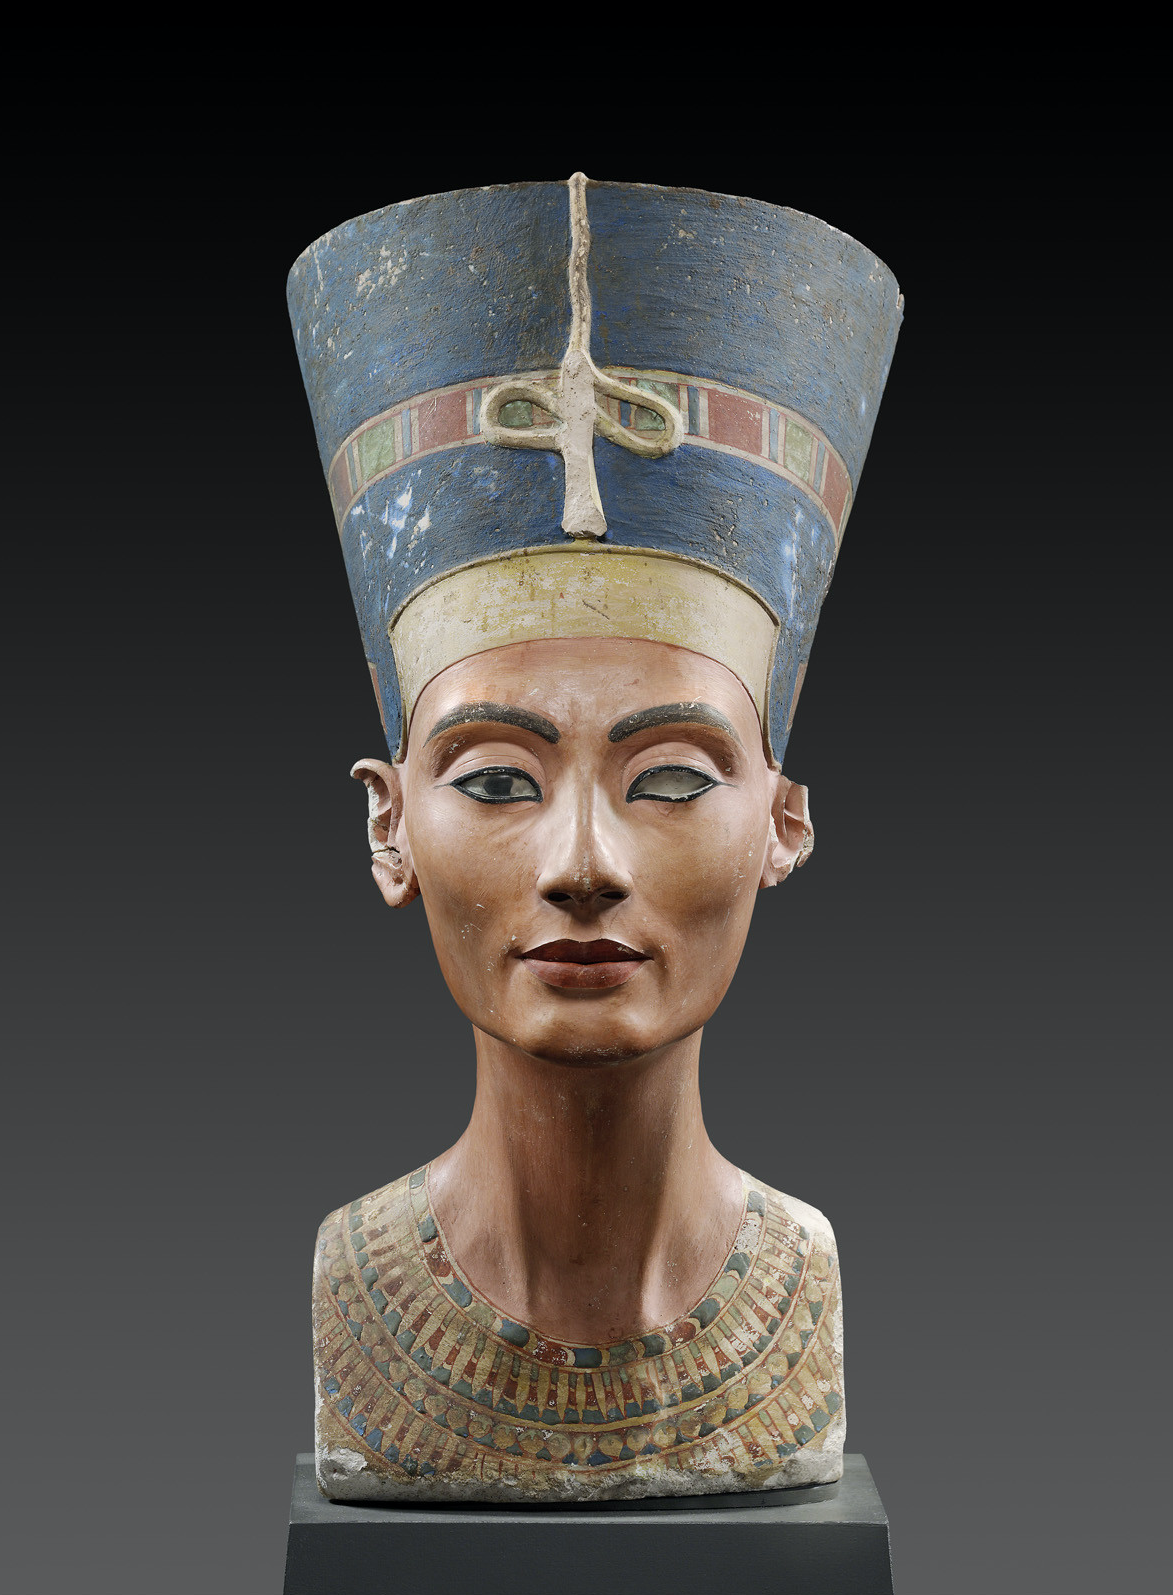 Buste van koningin Nefertiti by Onbekende Artiest - 18de dynastie, circa 1340 vChr - hoogte 50 cm Neues Museum